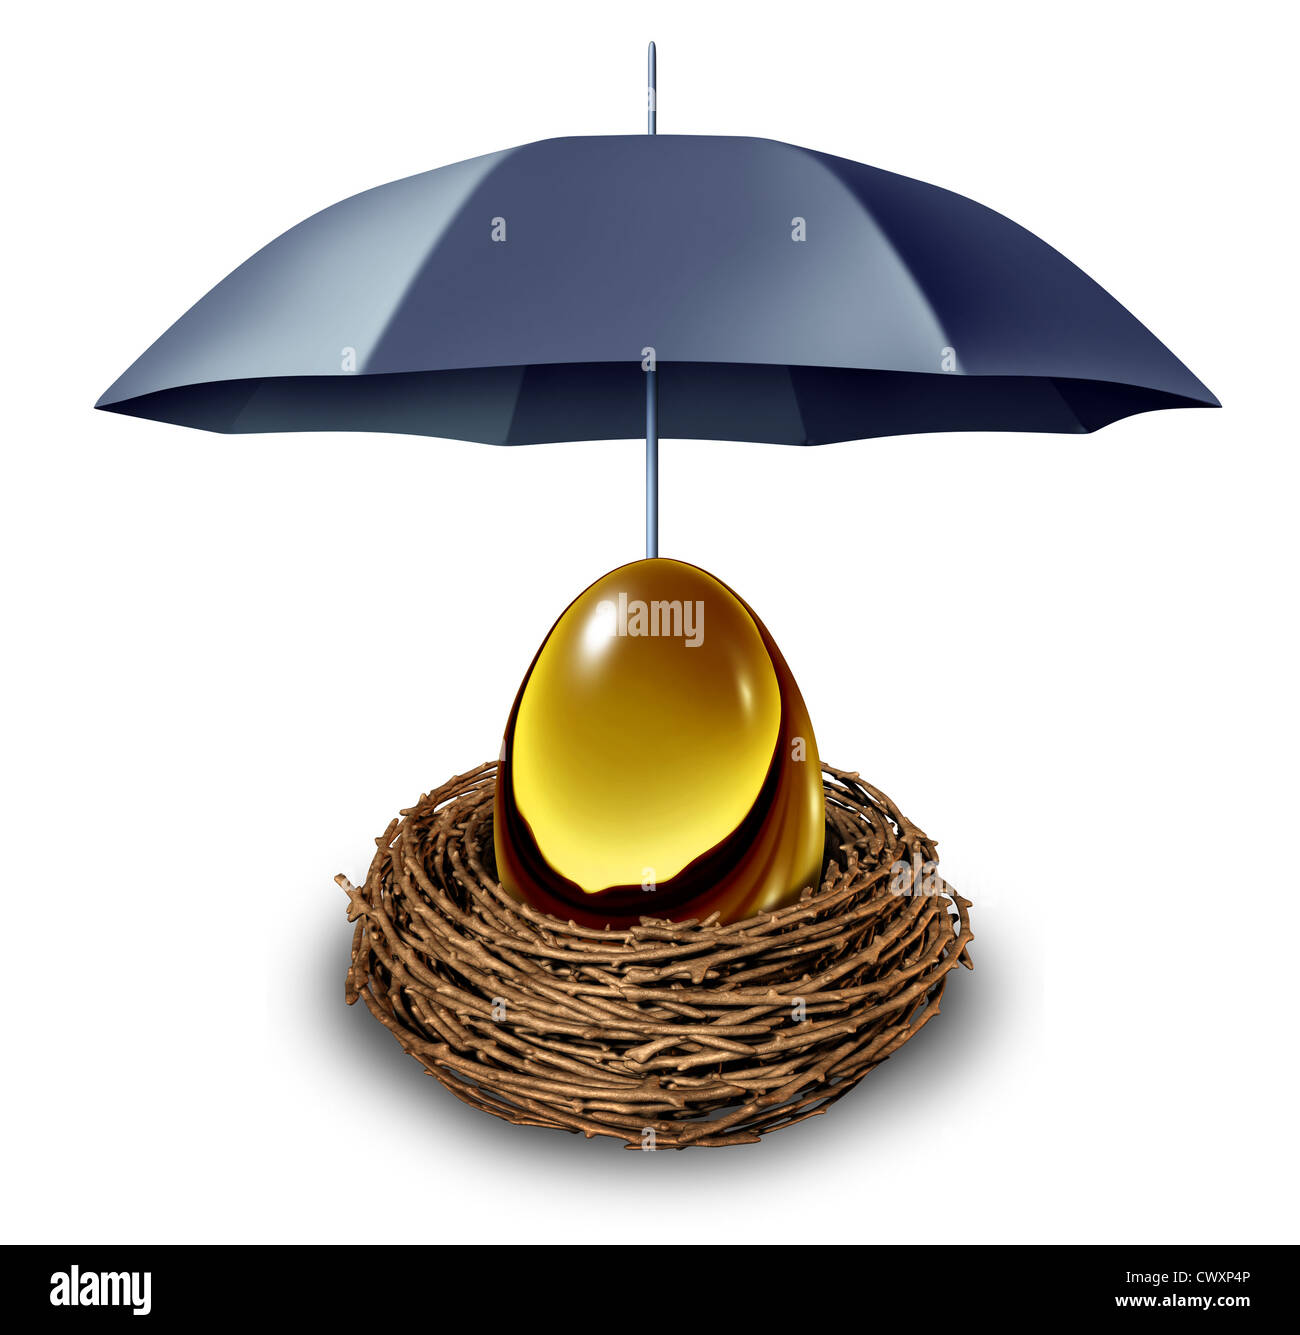 Seguridad Financiera y fondo de jubilación seguros símbolo con un huevo de  oro en un nido protegido por un paraguas negro contra hacia abajo gira en  la economía y como un refugio